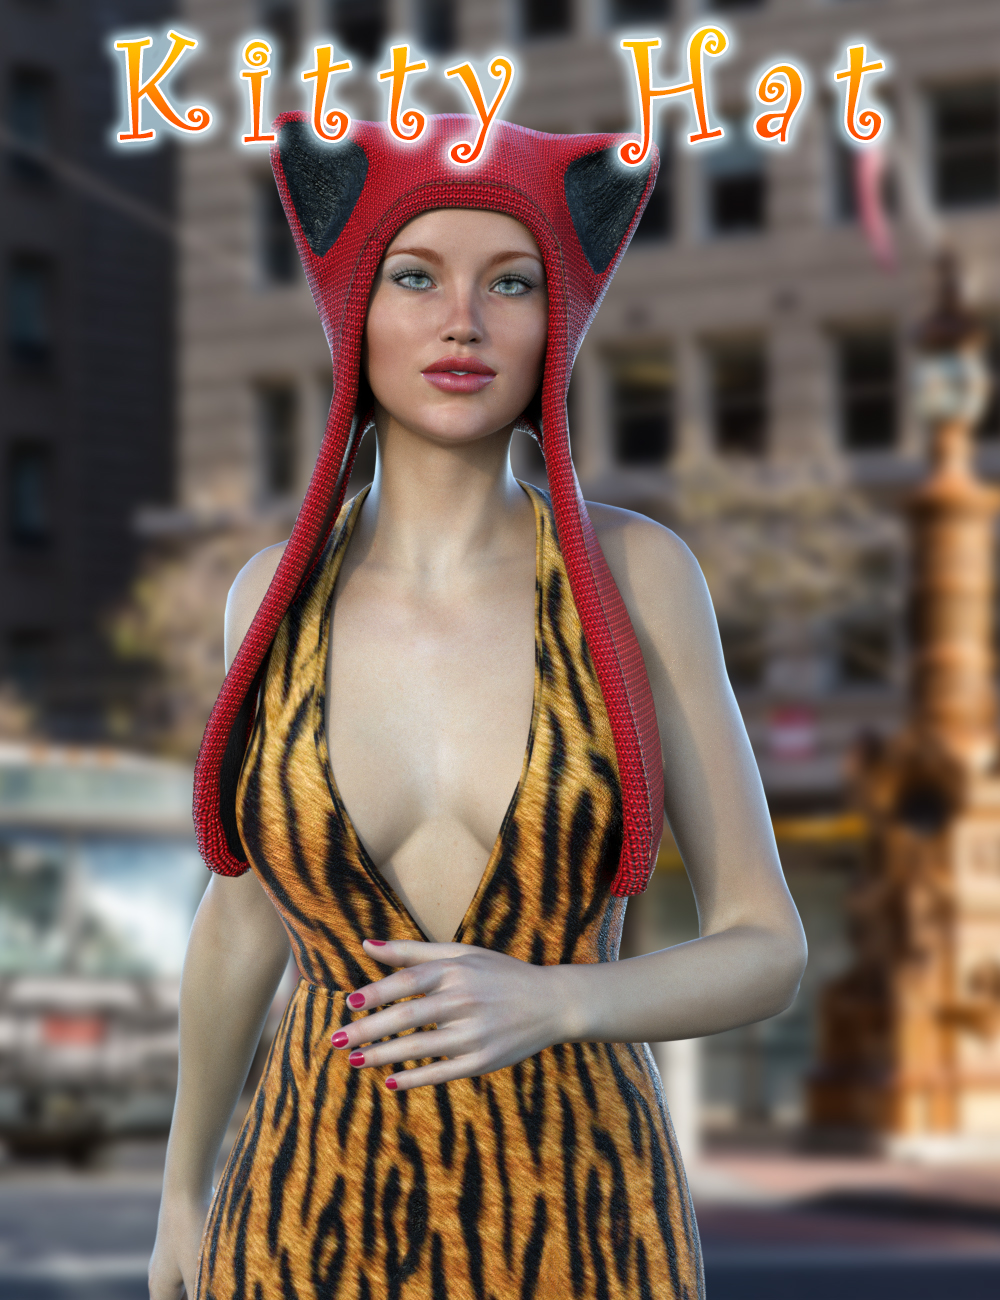 Kitty Hat by: Slide3D, 3D Models by Daz 3D